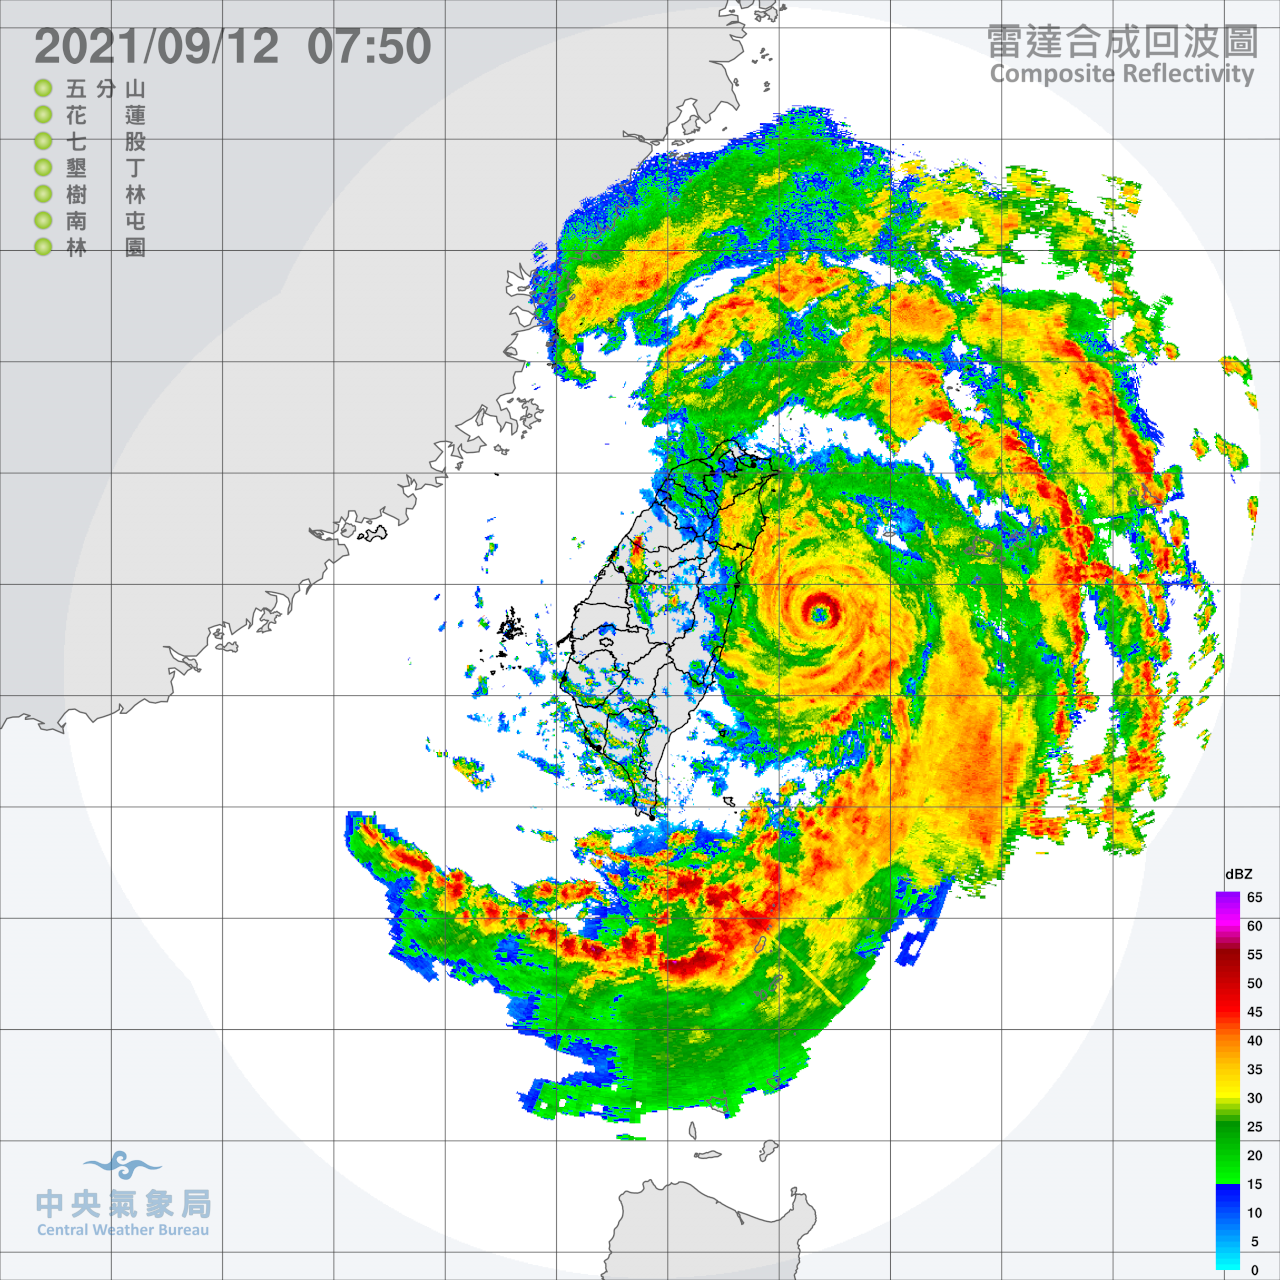 中度颱風璨樹暴風圈籠罩全台 東半部防豪雨